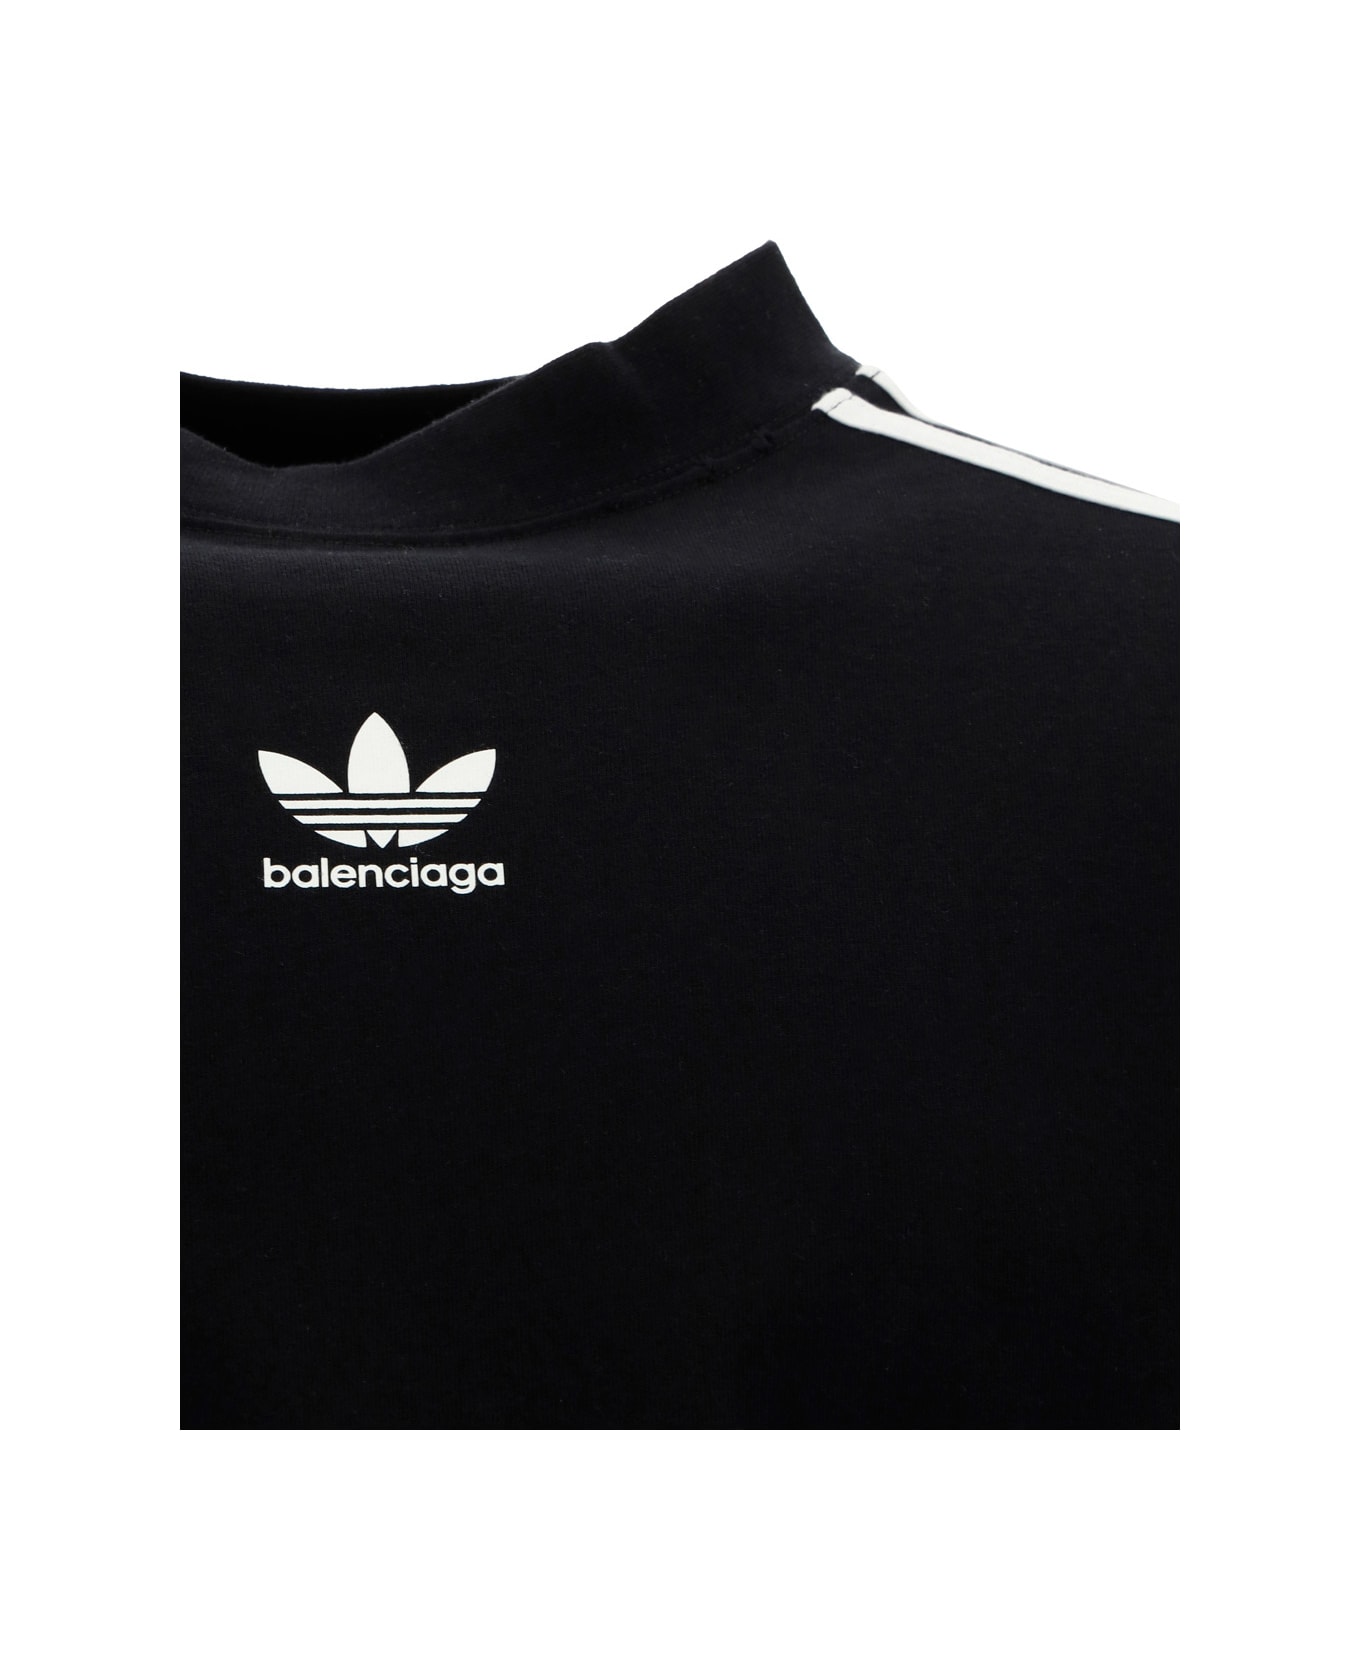 Balenciaga X Adidas agravic Jersey - Black/white/white